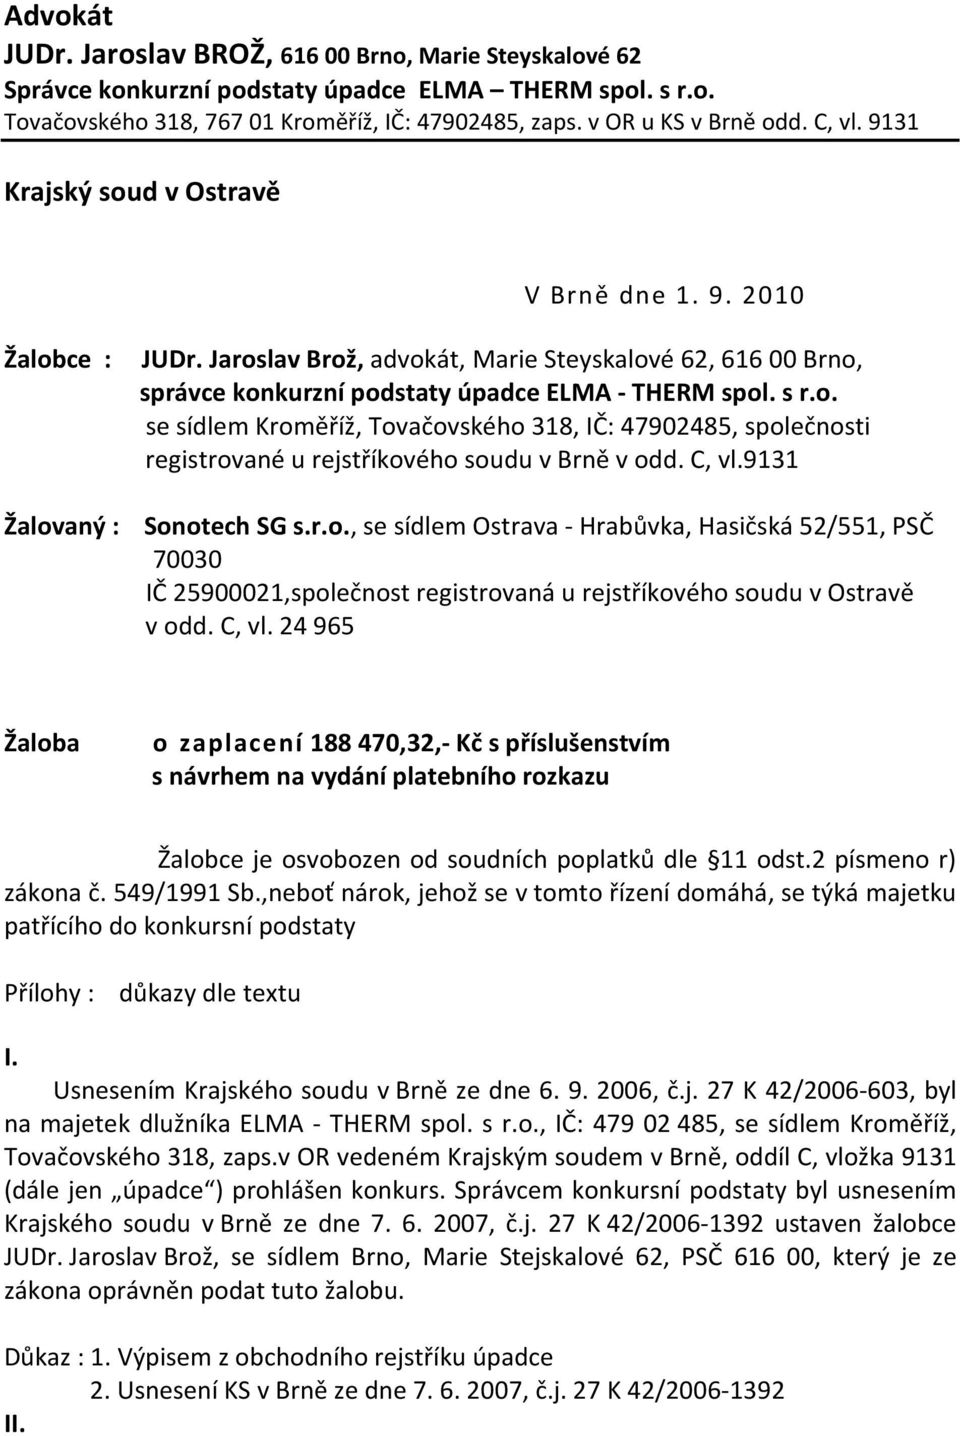 C, vl.9131 Žalovaný : Sonotech SG s.r.o., se sídlem Ostrava - Hrabůvka, Hasičská 52/551, PSČ 70030 IČ 25900021,společnost registrovaná u rejstříkového soudu v Ostravě v odd. C, vl.